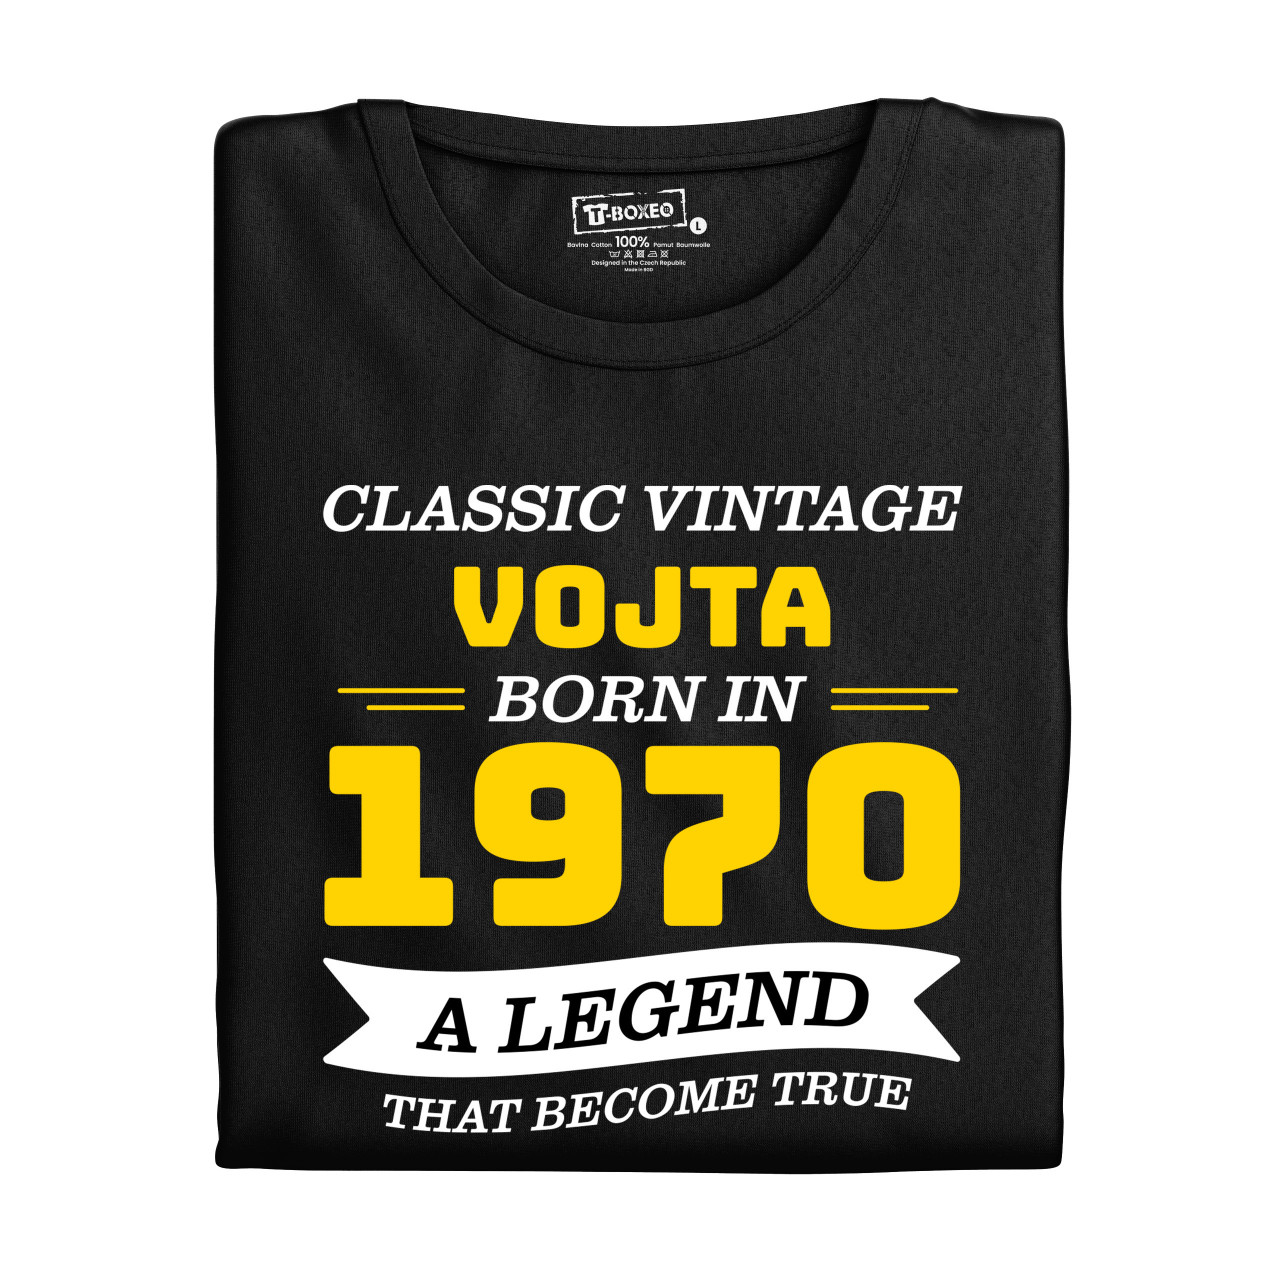 Pánské tričko s potiskem “Classic Vintage” s vlastním jménem a rokem narození